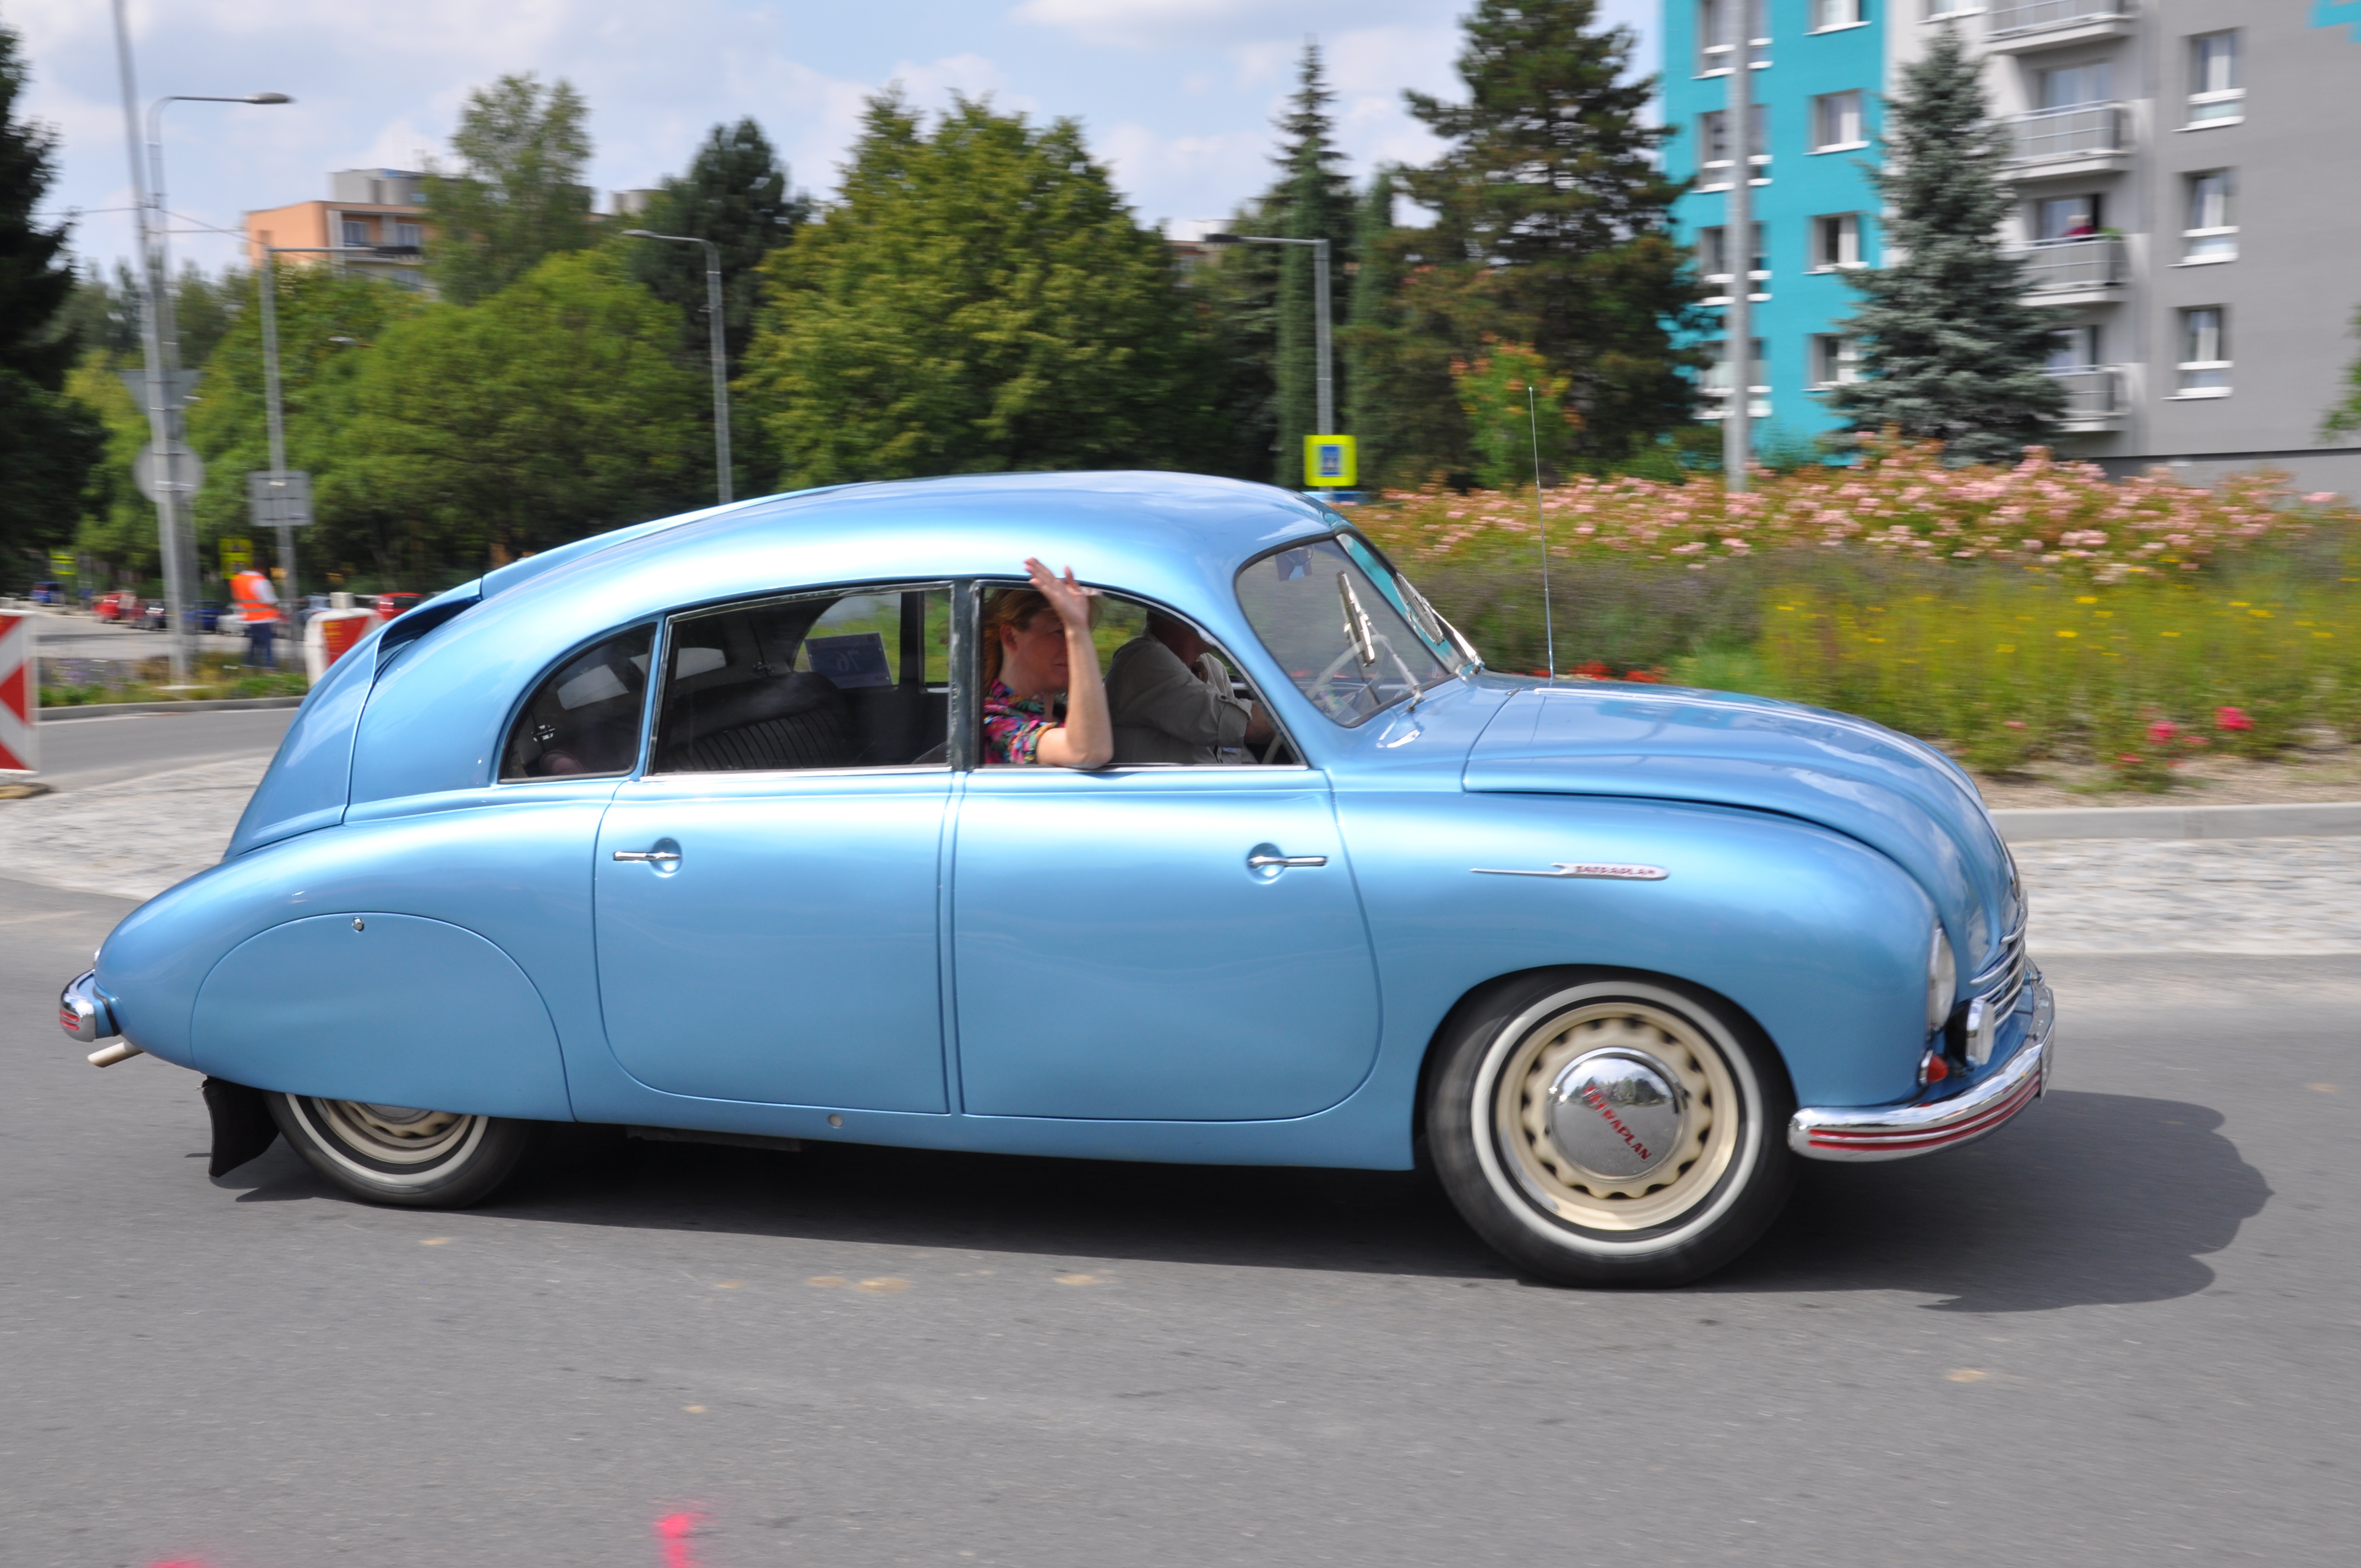 Typický proudnicový tvar měla Tatra 600 neboli Tatraplan. Vyráběla se od roku 1948 v Kopřivnici. V roce 1951 byla výroba převedena do Mladé Boleslavi.